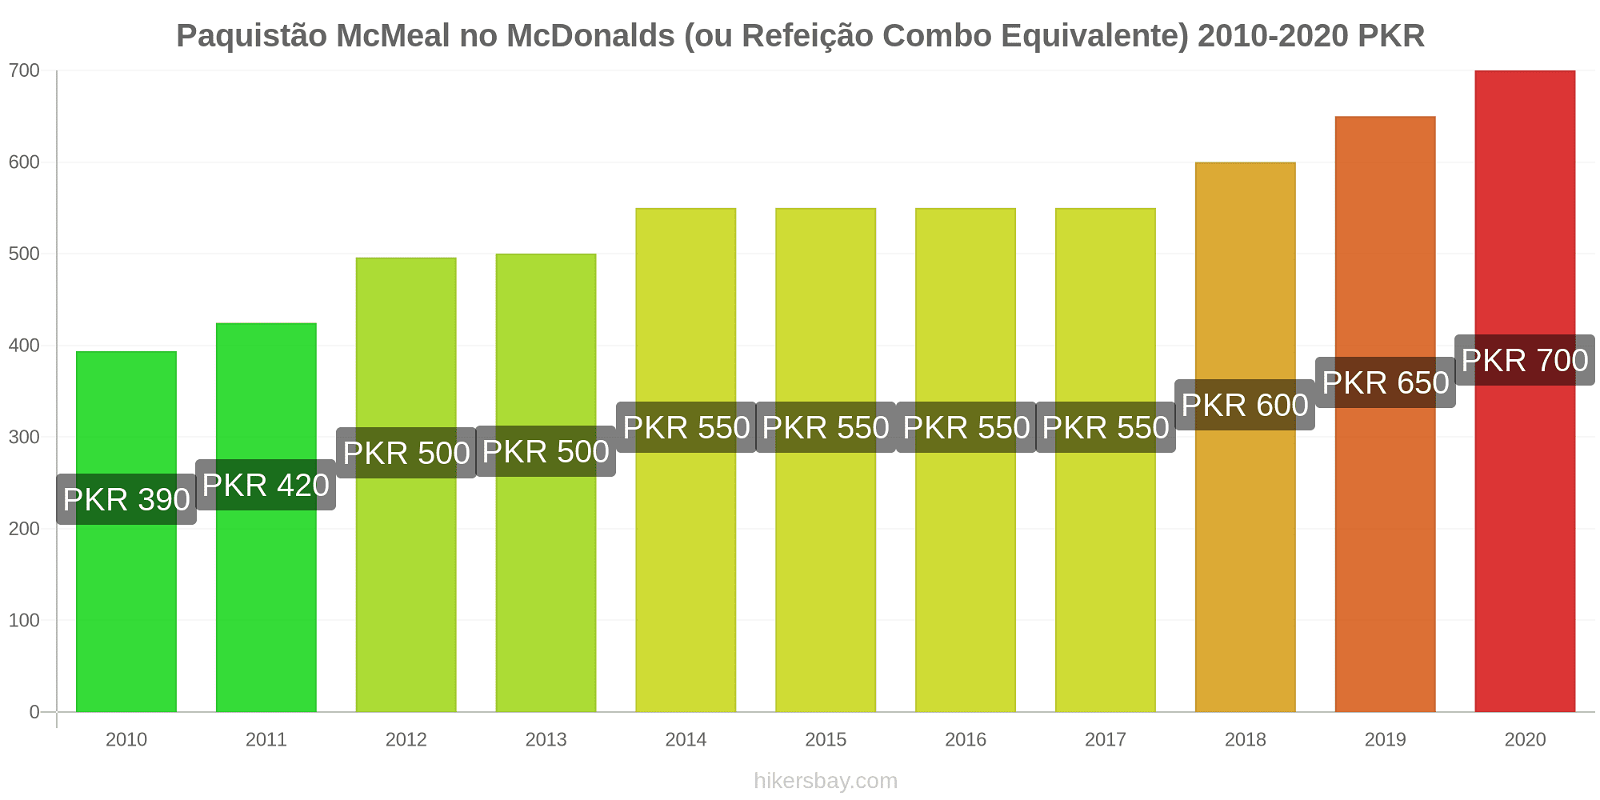 Paquistão variação de preço McMeal no McDonald ' s (ou refeição Combo equivalente) hikersbay.com